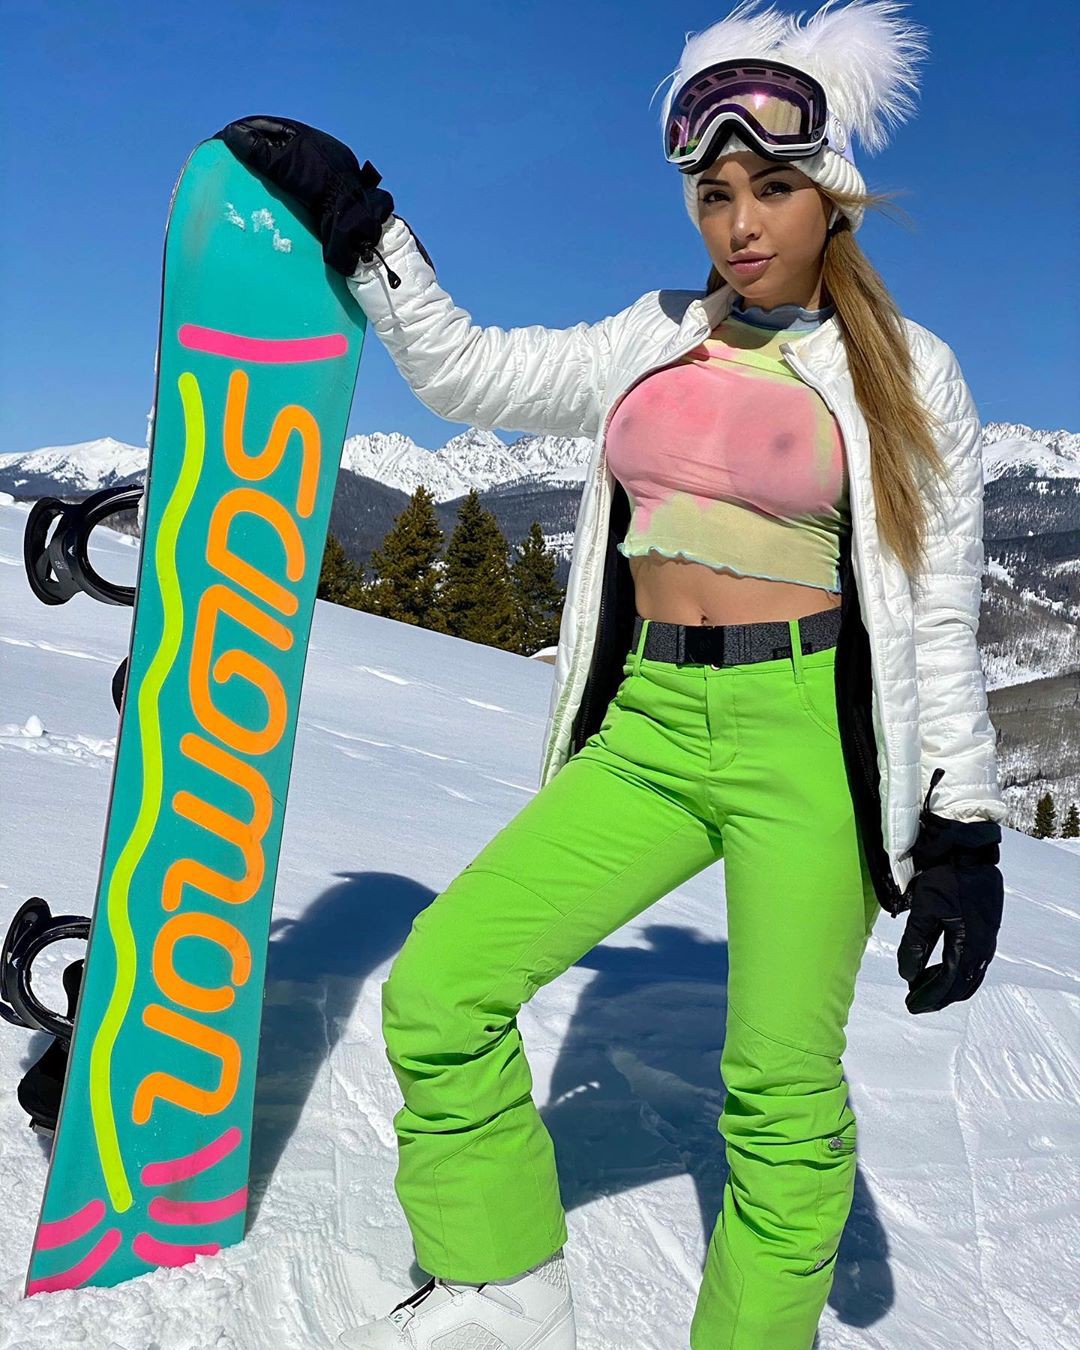 Maddy Belle disfrutando de la vida, equipo de esquí, deporte de invierno: chicas de instagram,  Equipo de esquí,  Deporte de invierno  